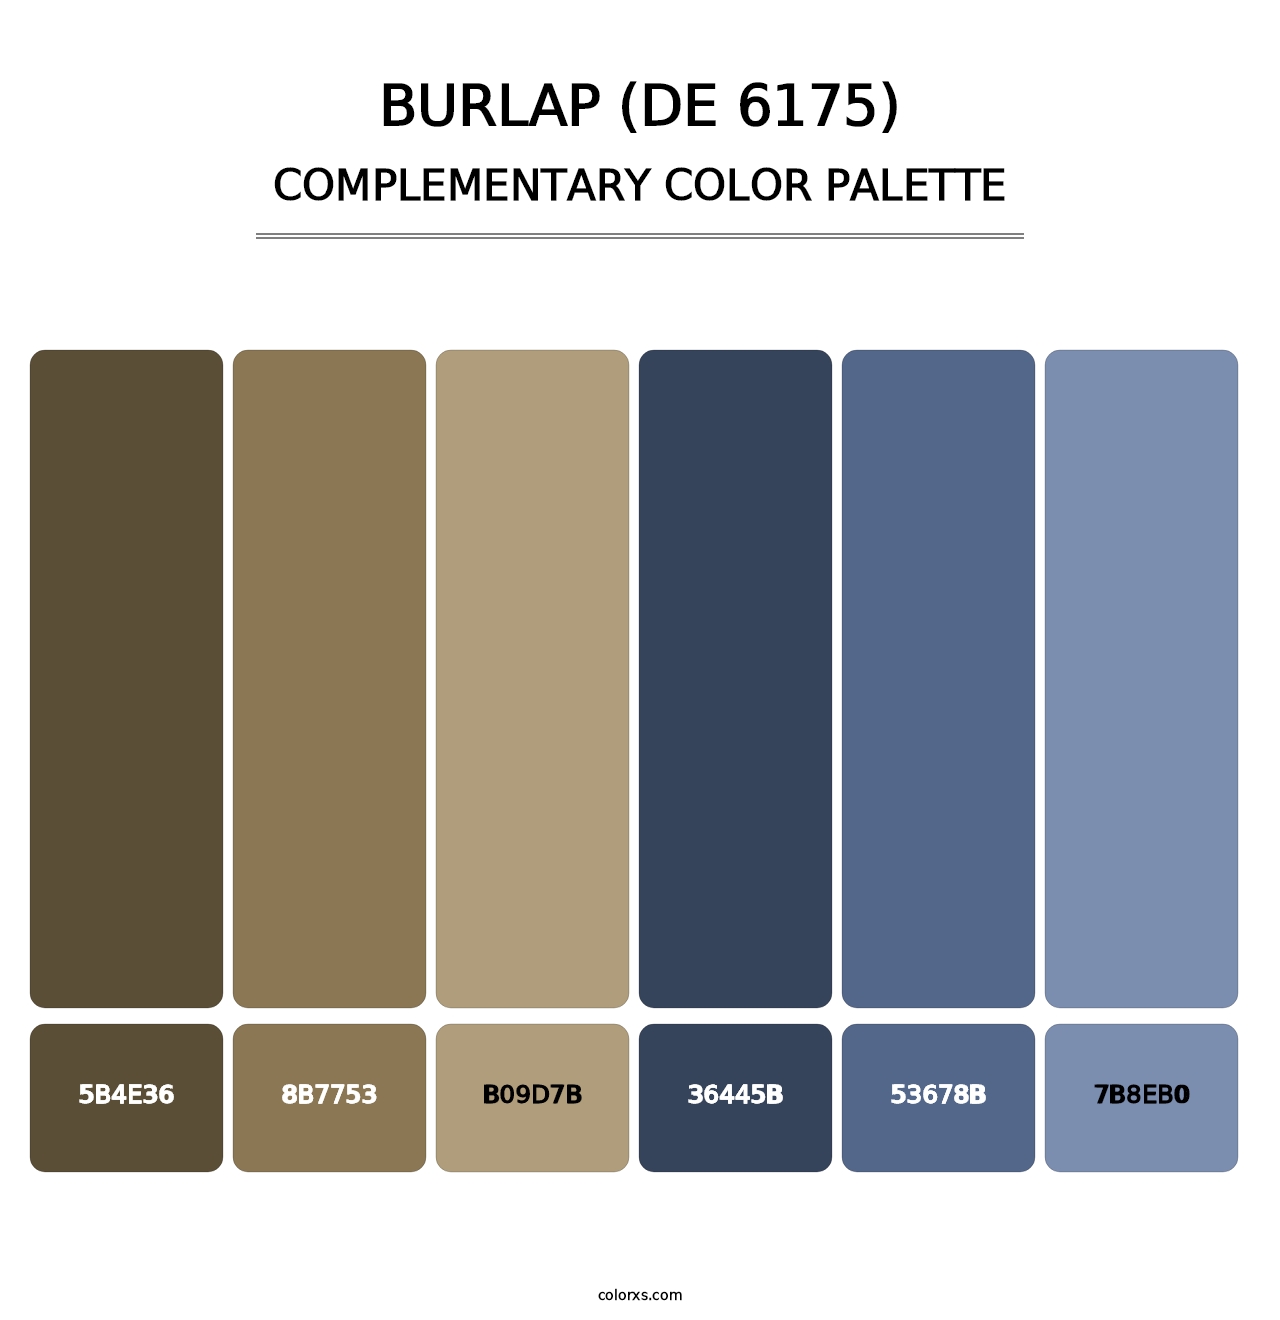 Burlap (DE 6175) - Complementary Color Palette